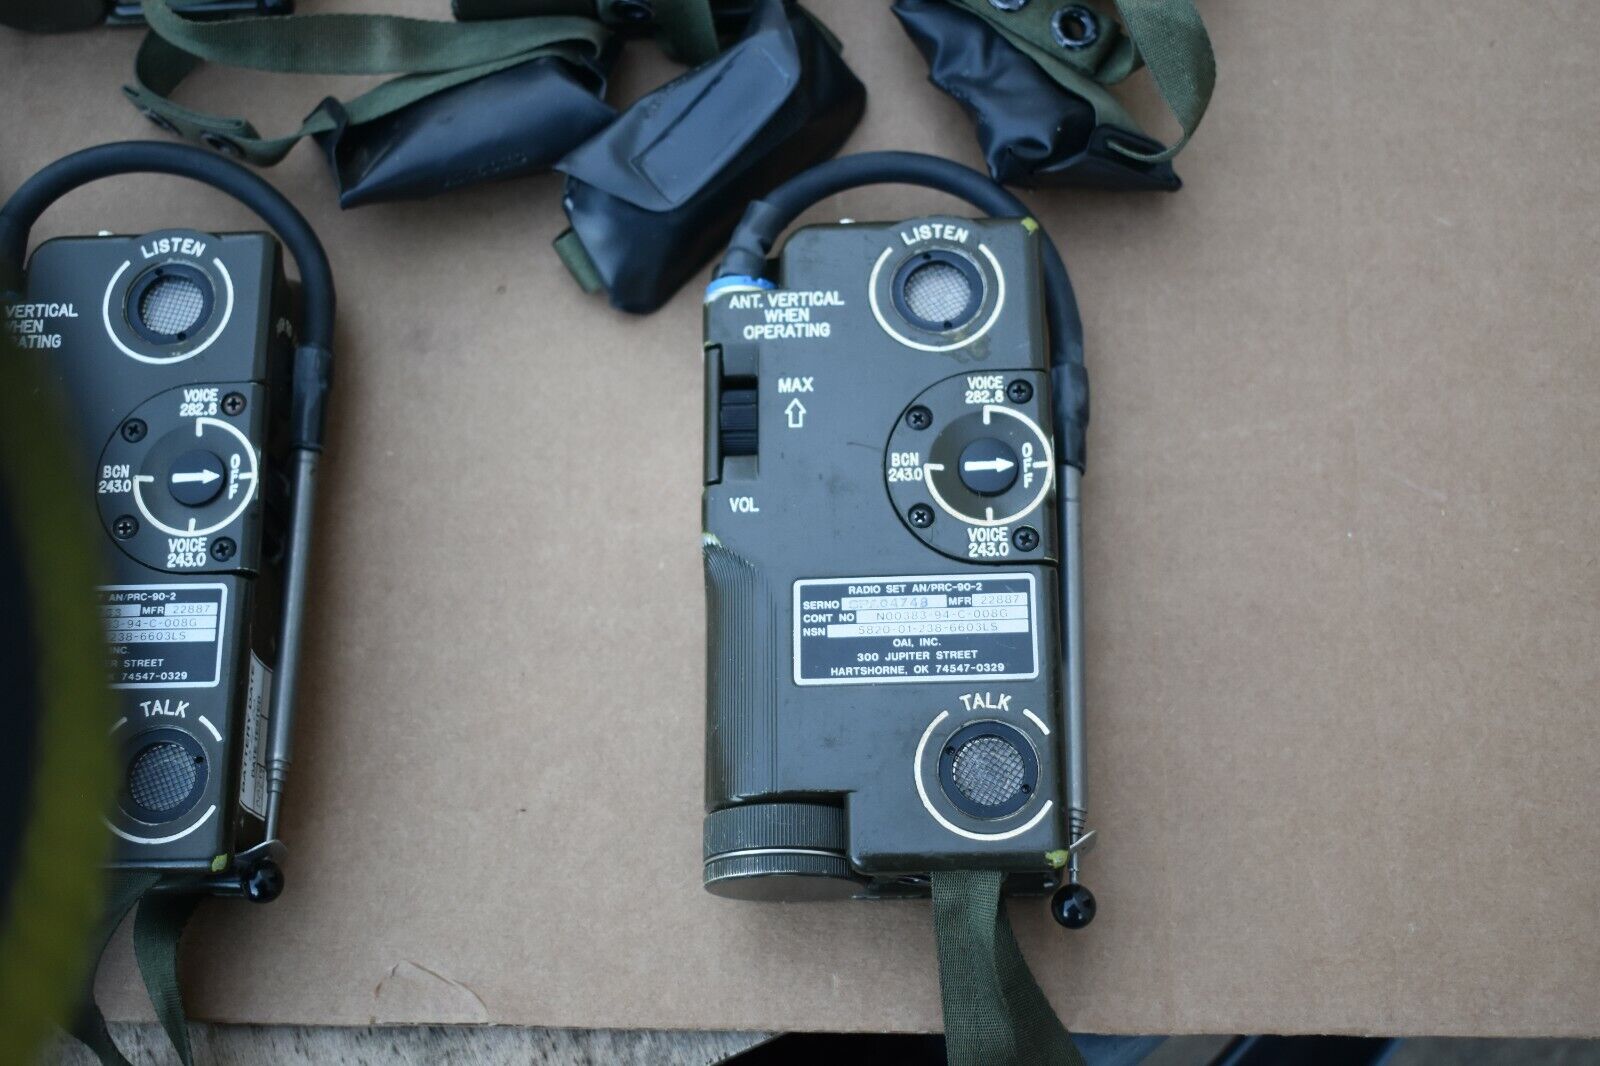 AN/PRC-90-2 Military Survival Radio